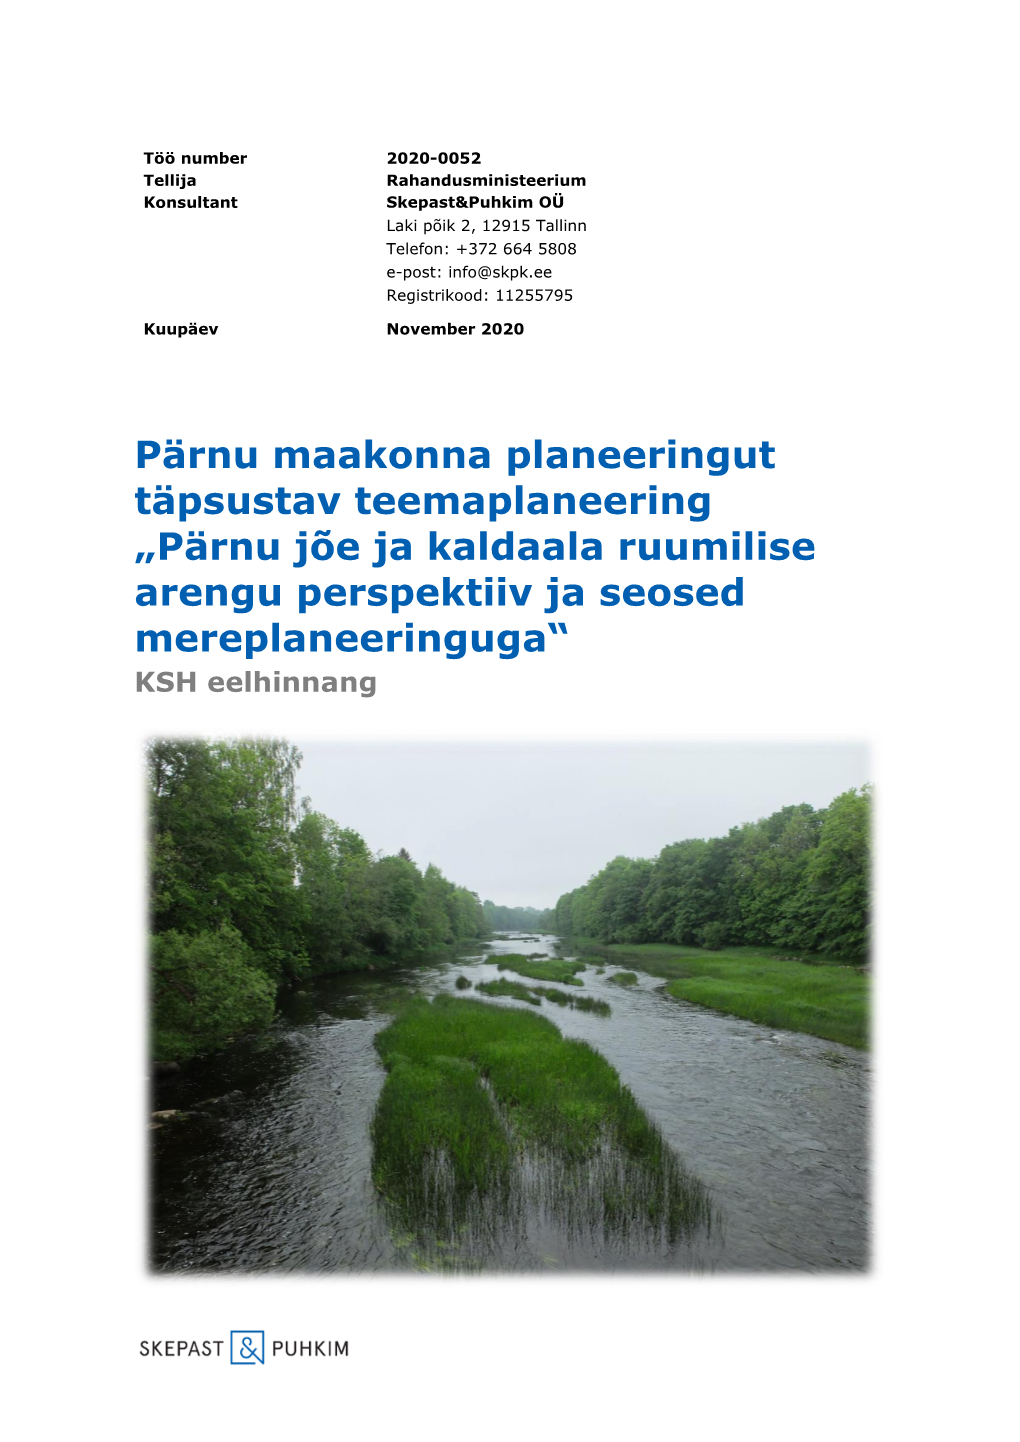 Pärnu Jõe Ja Kaldaala Ruumilise Arengu Perspektiiv Ja Seosed Mereplaneeringuga“ KSH Eelhinnang